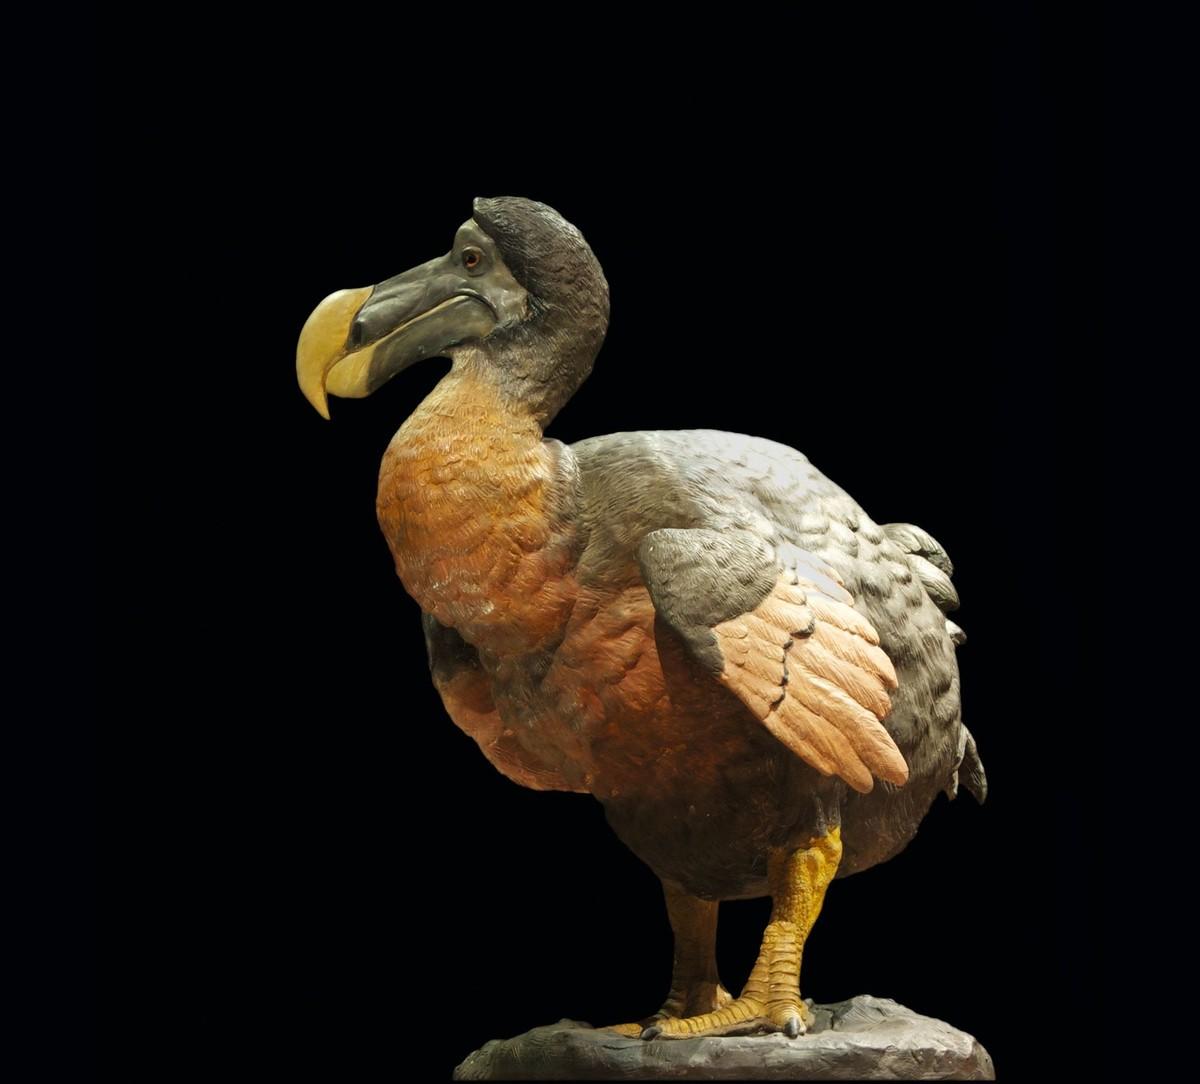 Reconstitution du dodo au Museum national d'histoire naturelle de Paris.